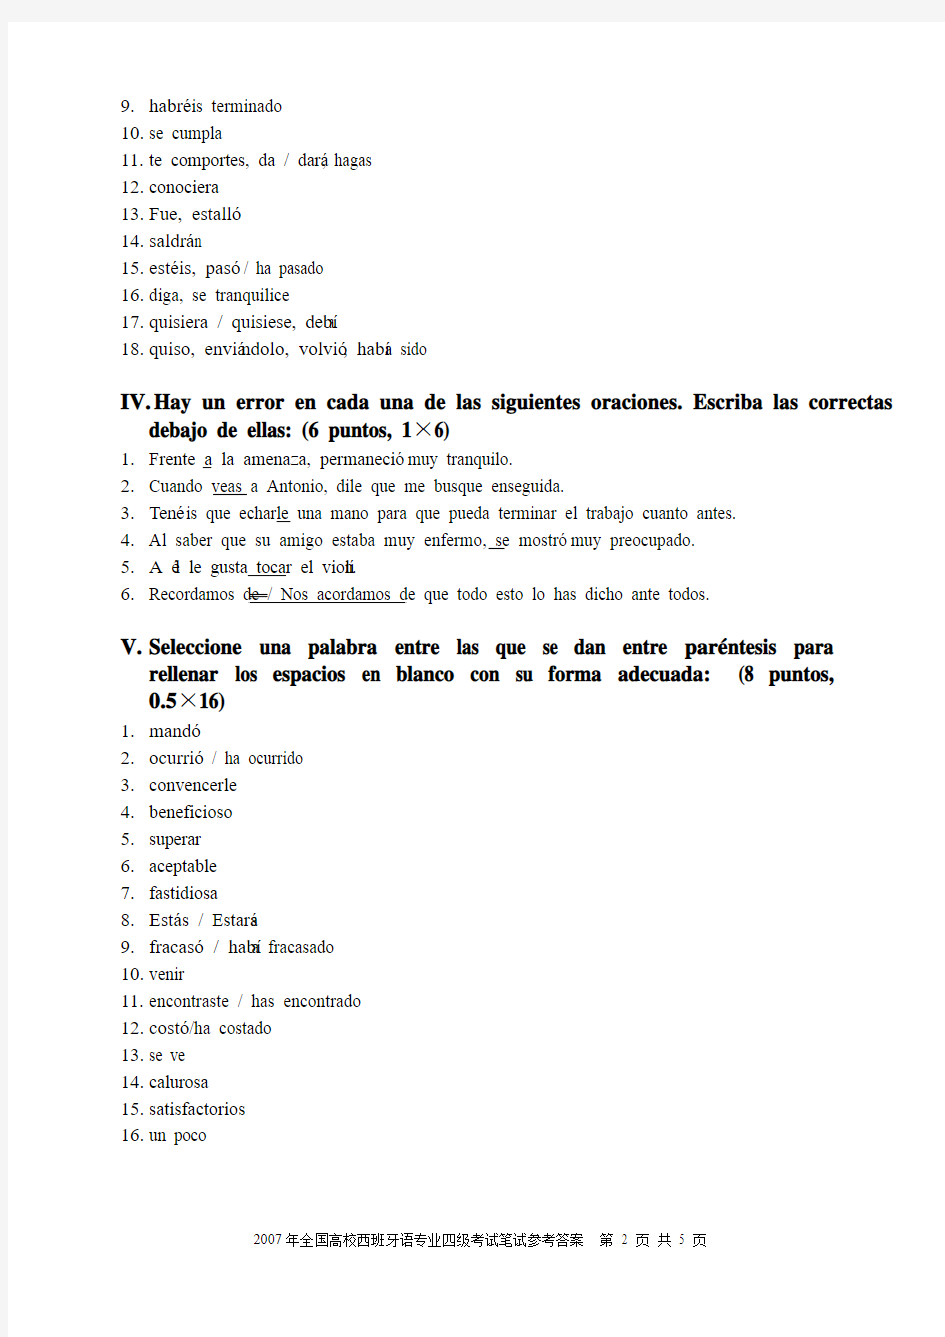 2007年西班牙语四级考试笔试参考答案